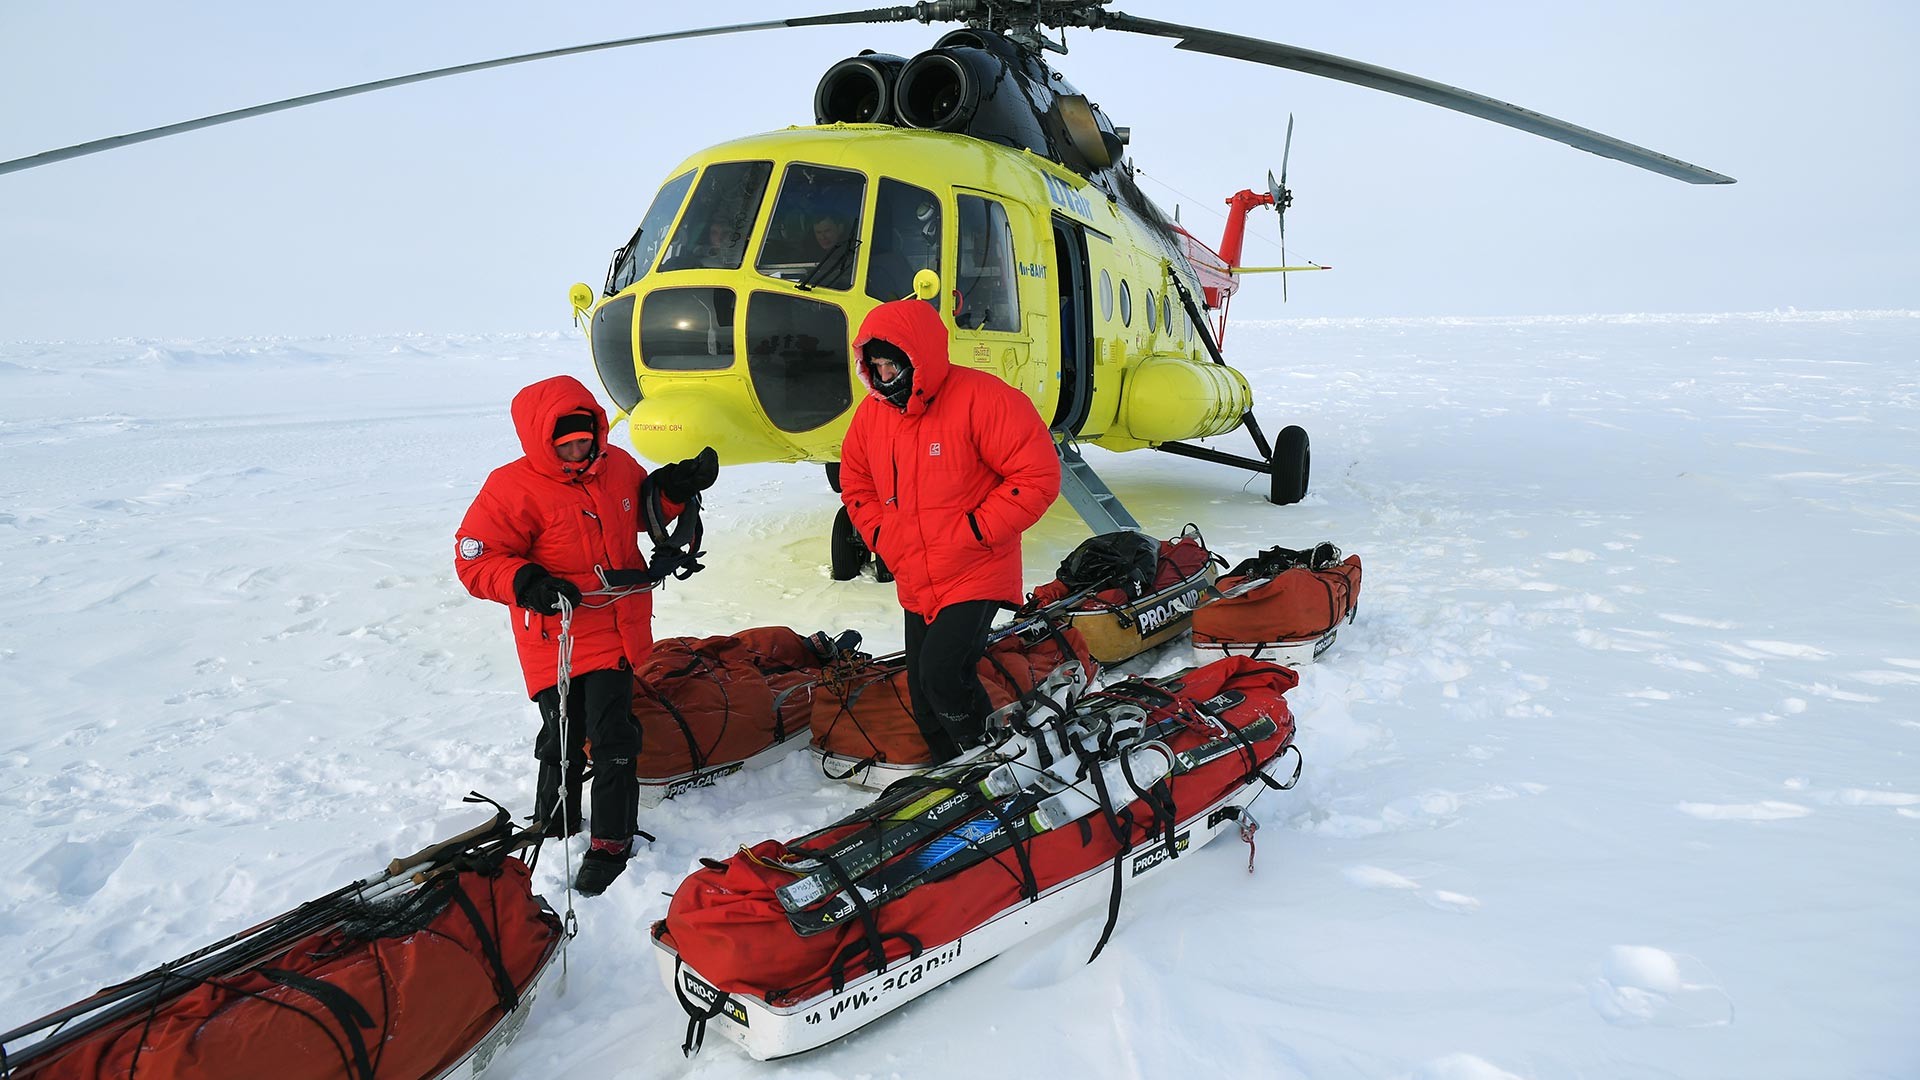 Članovi 10. velike arktičke ekspedicije pod rukovodstvom polarnog istraživača Matveja Šparoa na Sjevernom polu.

